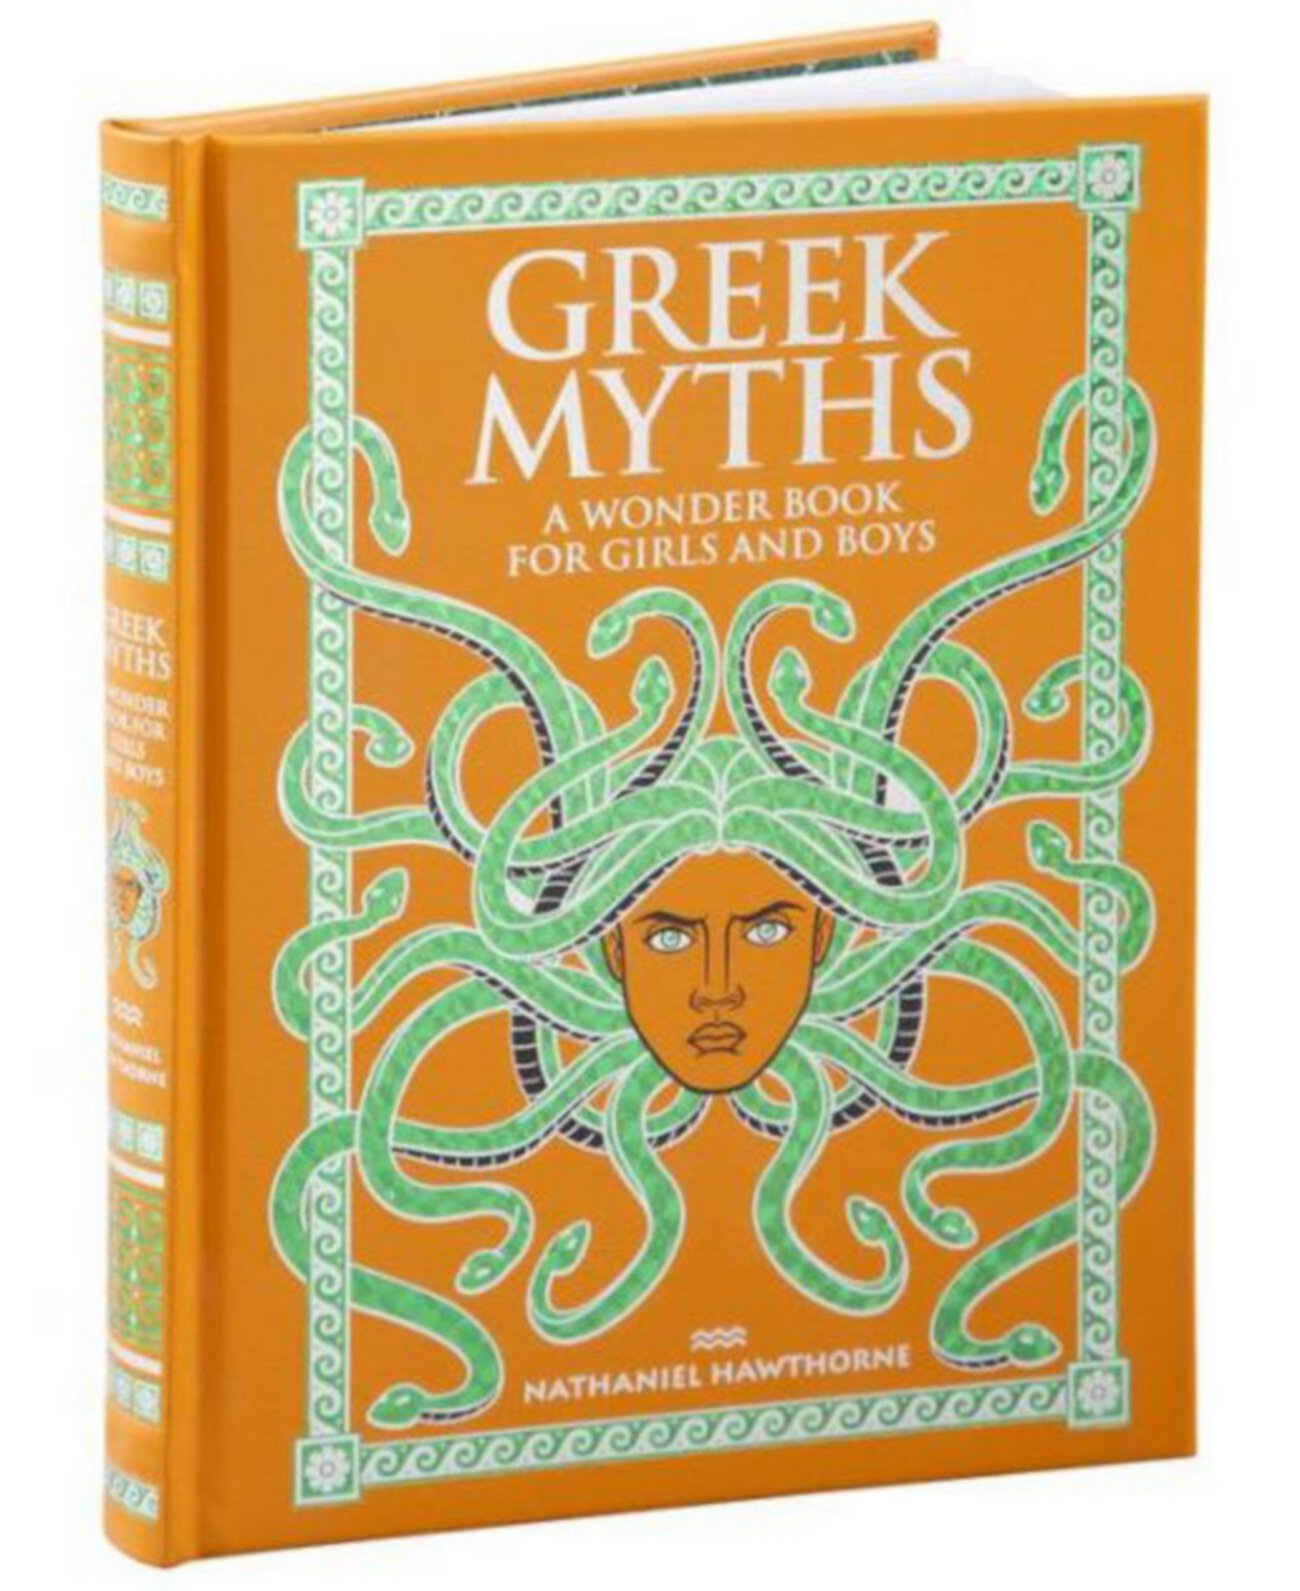 Греческие мифы: чудесная книга для девочек и мальчиков (коллекционные издания) Натаниэля Хоторна Barnes & Noble